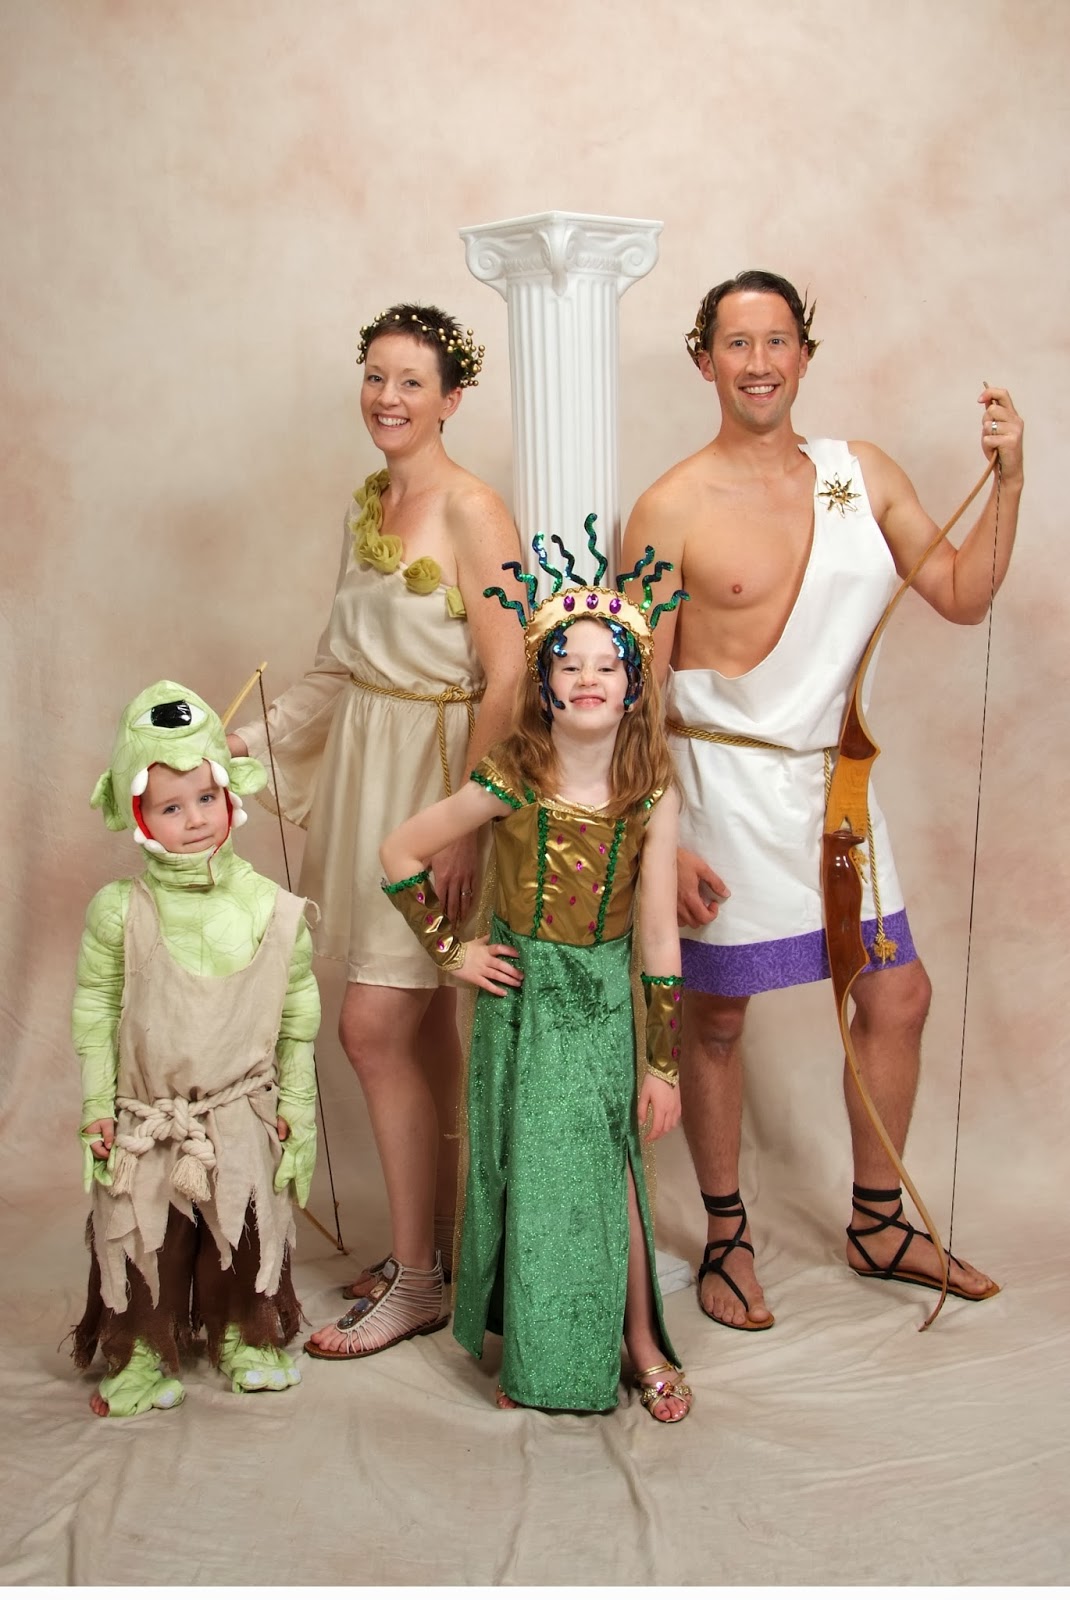 Semrau Family Costumes: Family Photos - Greek Mythology: Of Gods and ...